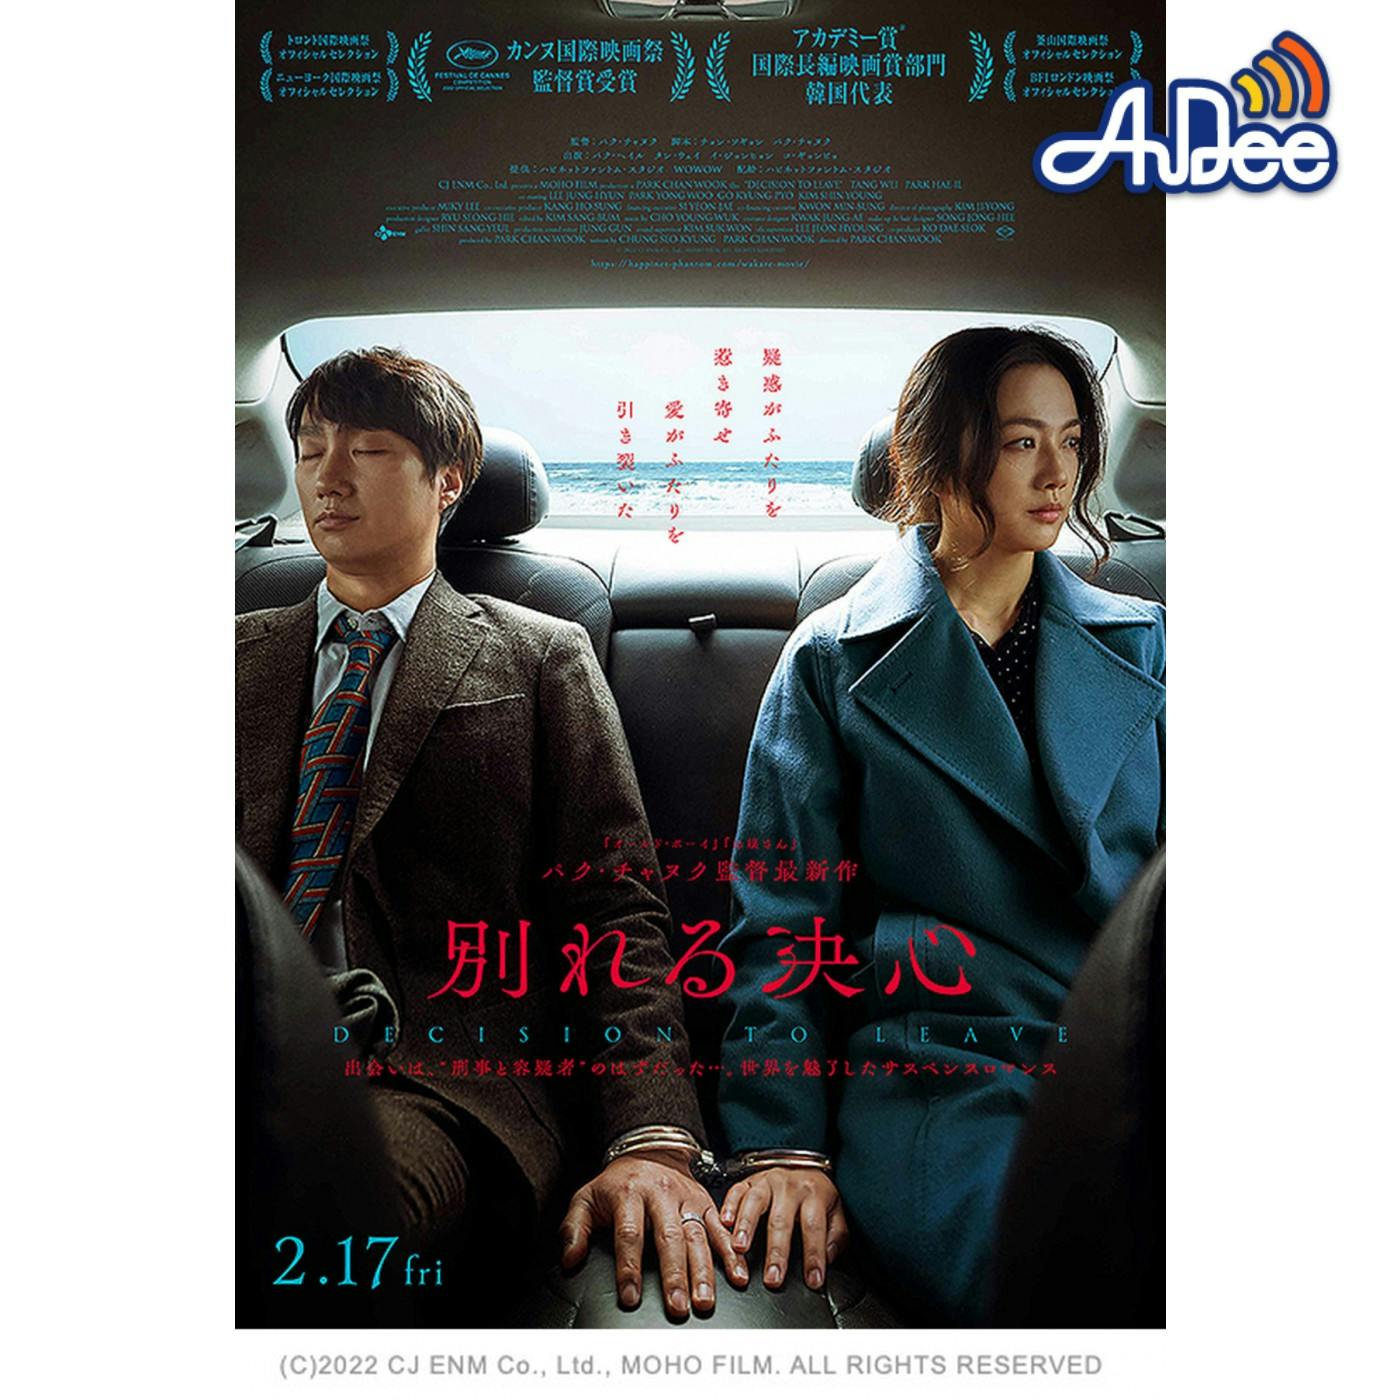 話題の韓国映画「別れる決心」について 二村ヒトシと映画.com編集部エビタニが「愛」やら「不倫」やらこじらせながらトーク！？　#映画半蔵門 でのつぶやきもお願いします・・・